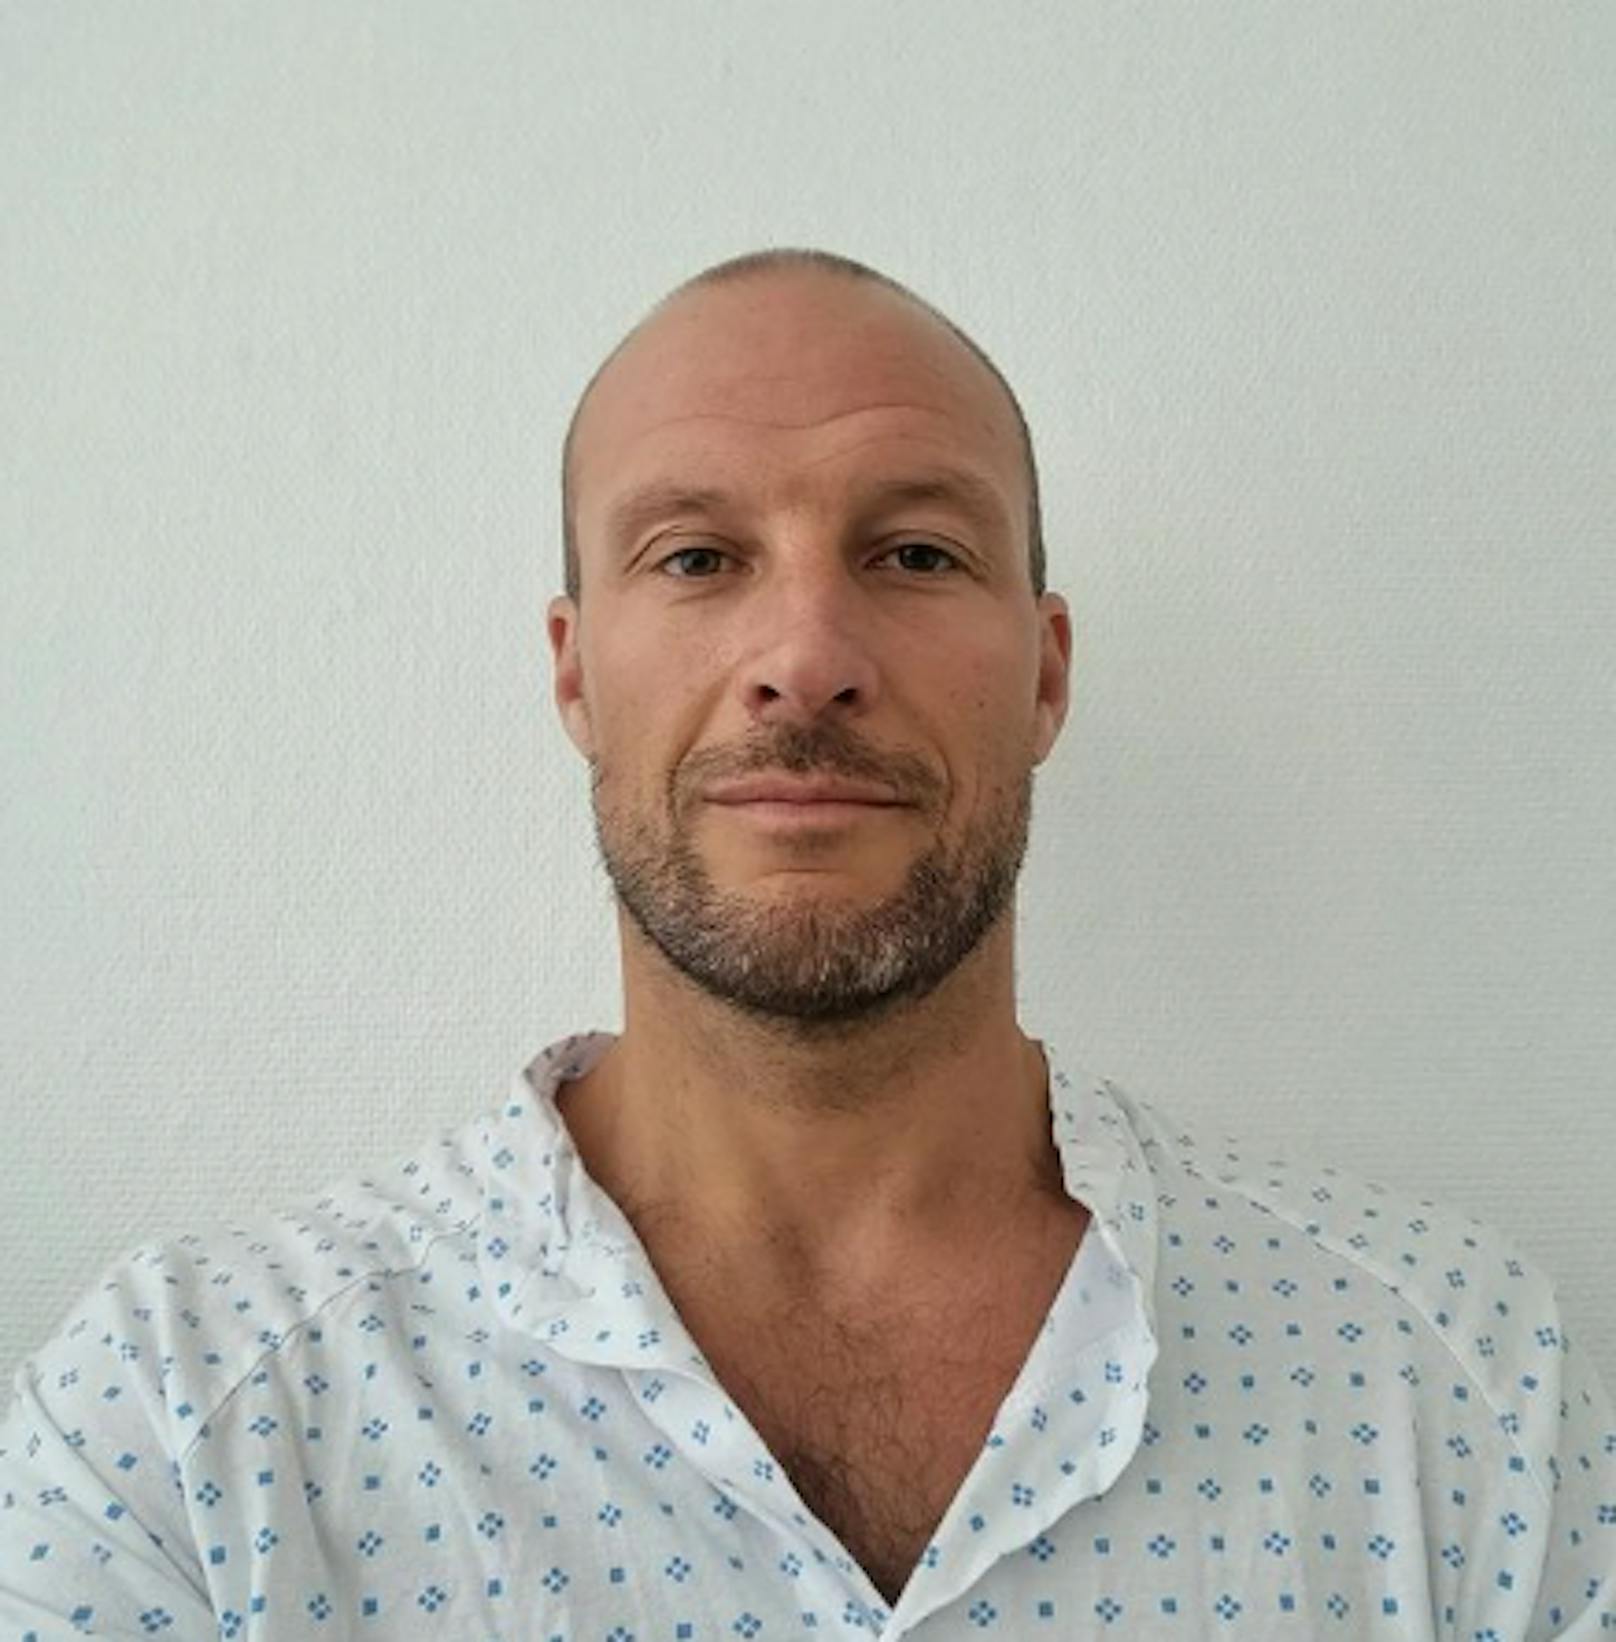 Aksel Lund Svindal machte vor wenigen Tagen noch ein Selfie im Spitals-Outfit.